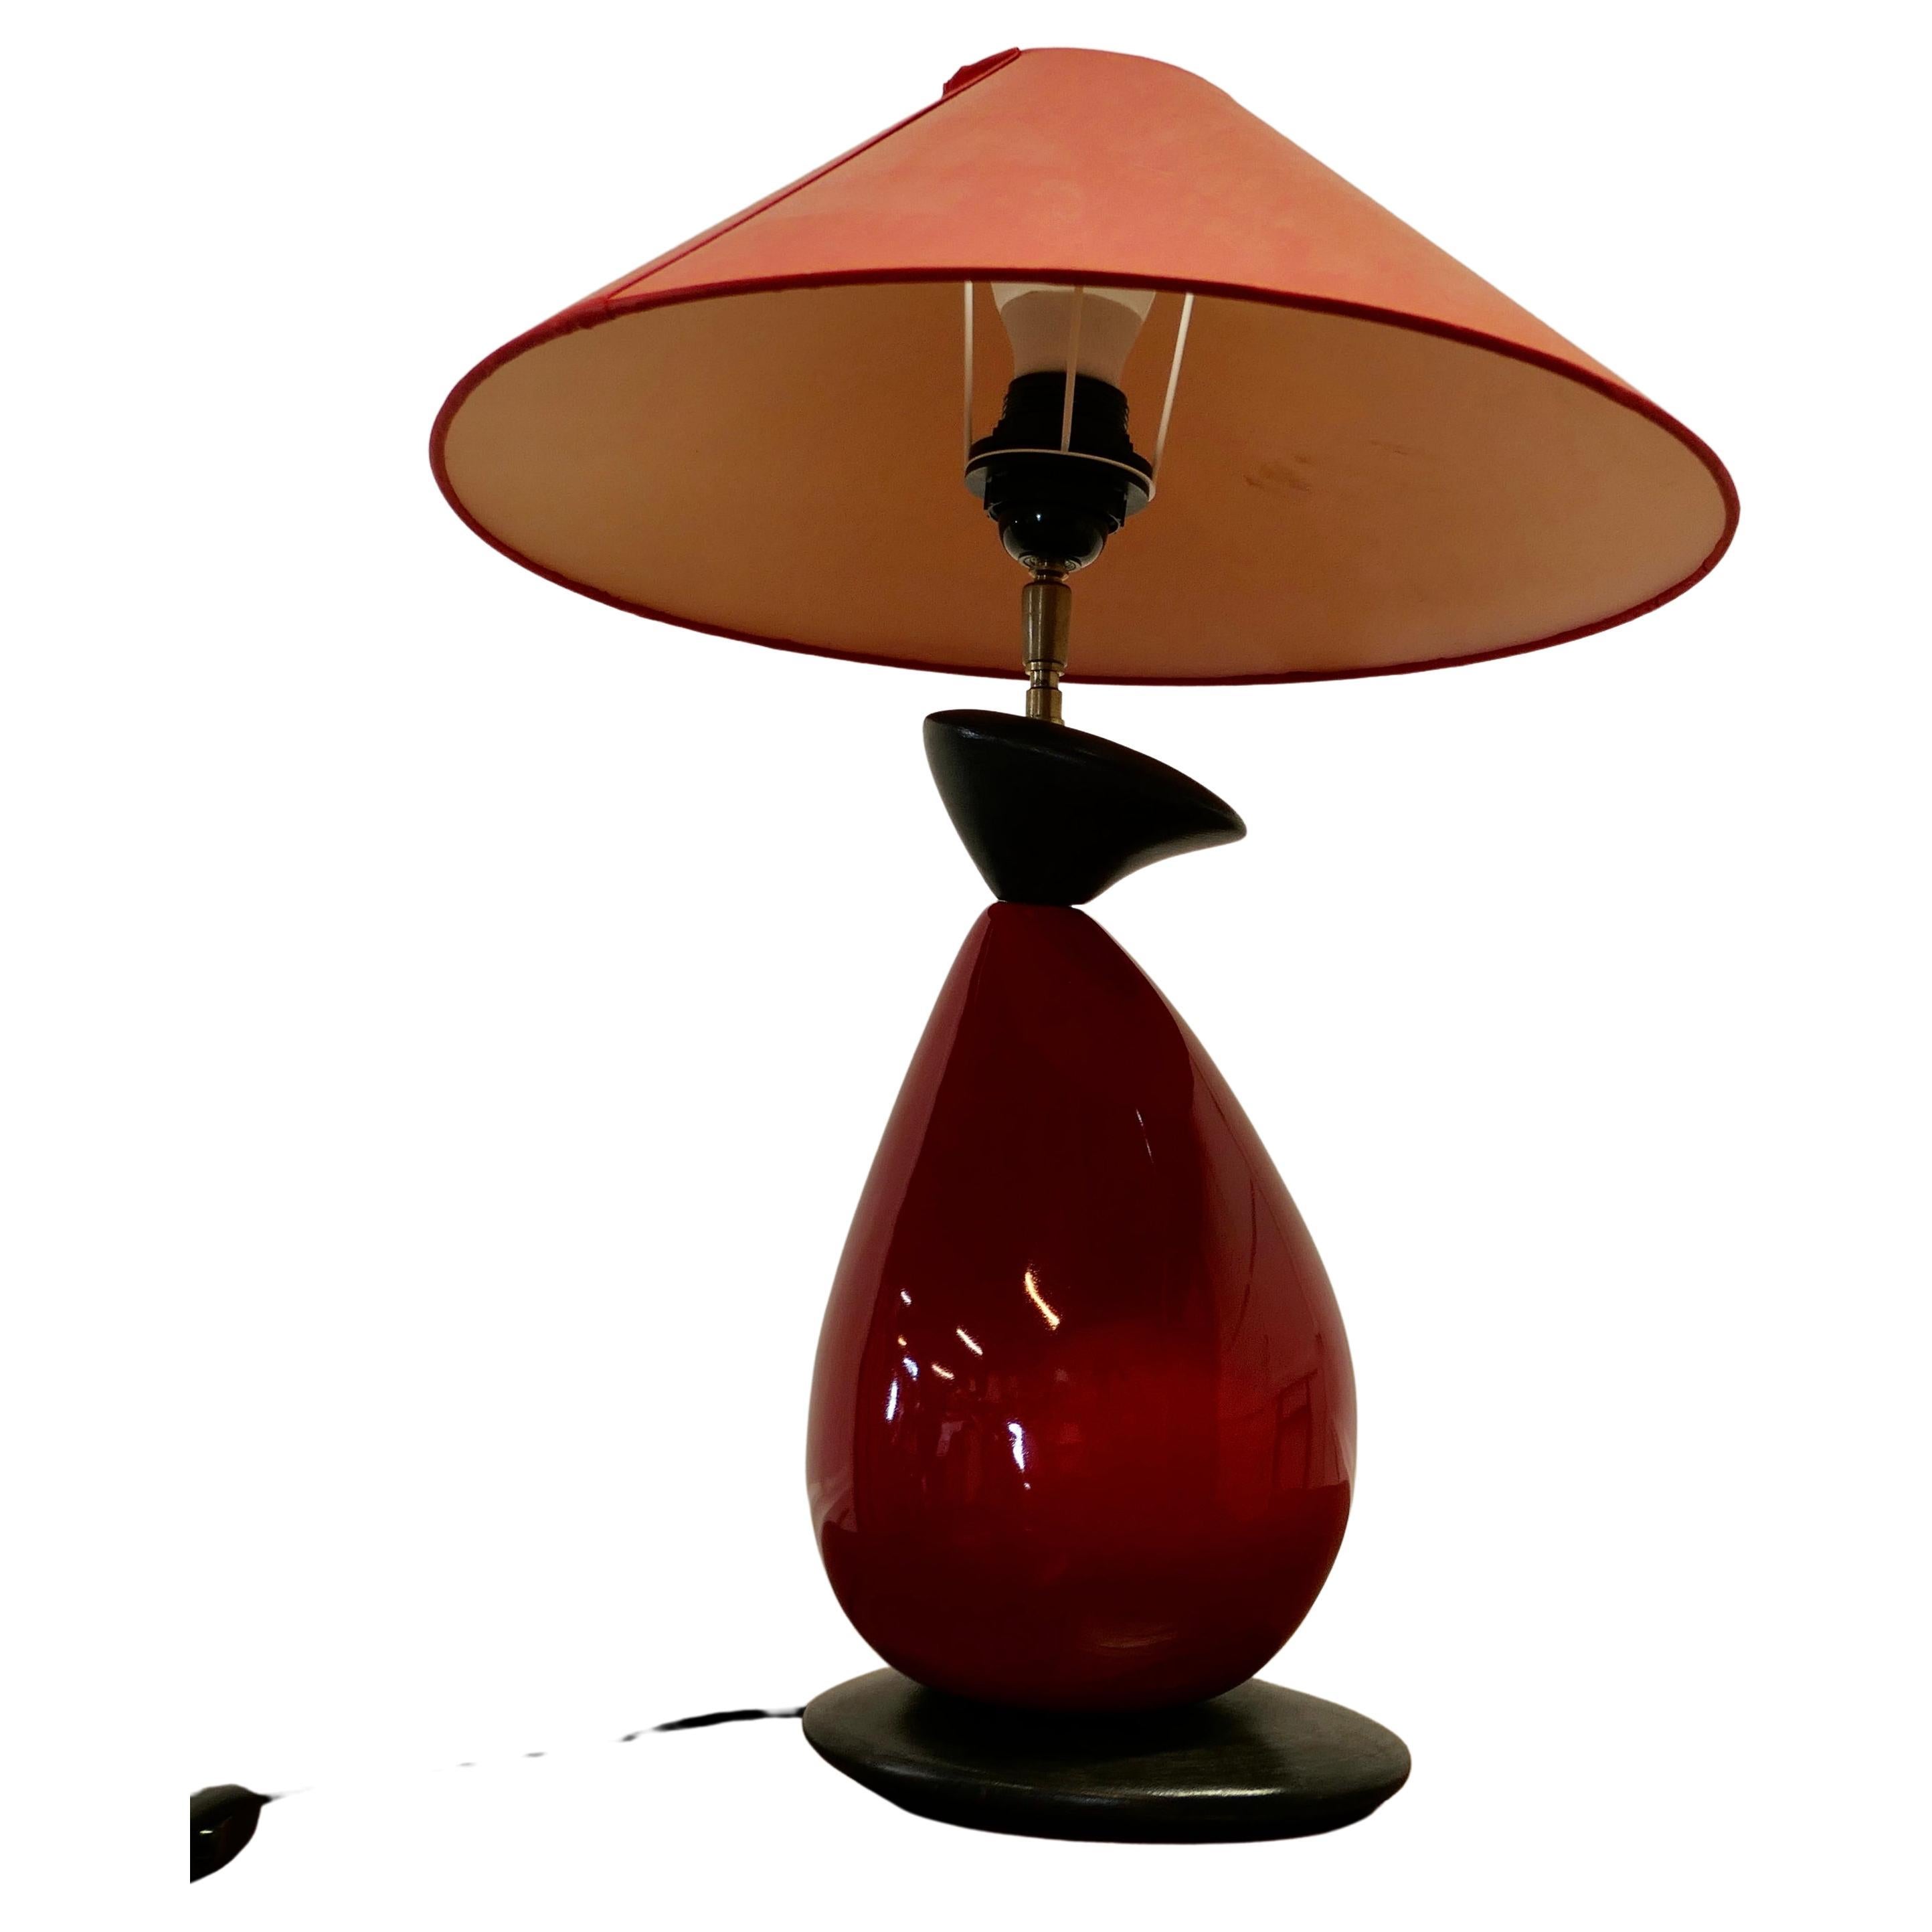 Francois Chatain Pebble Lamp from France  Une pièce charmante en rouge foncé et noir